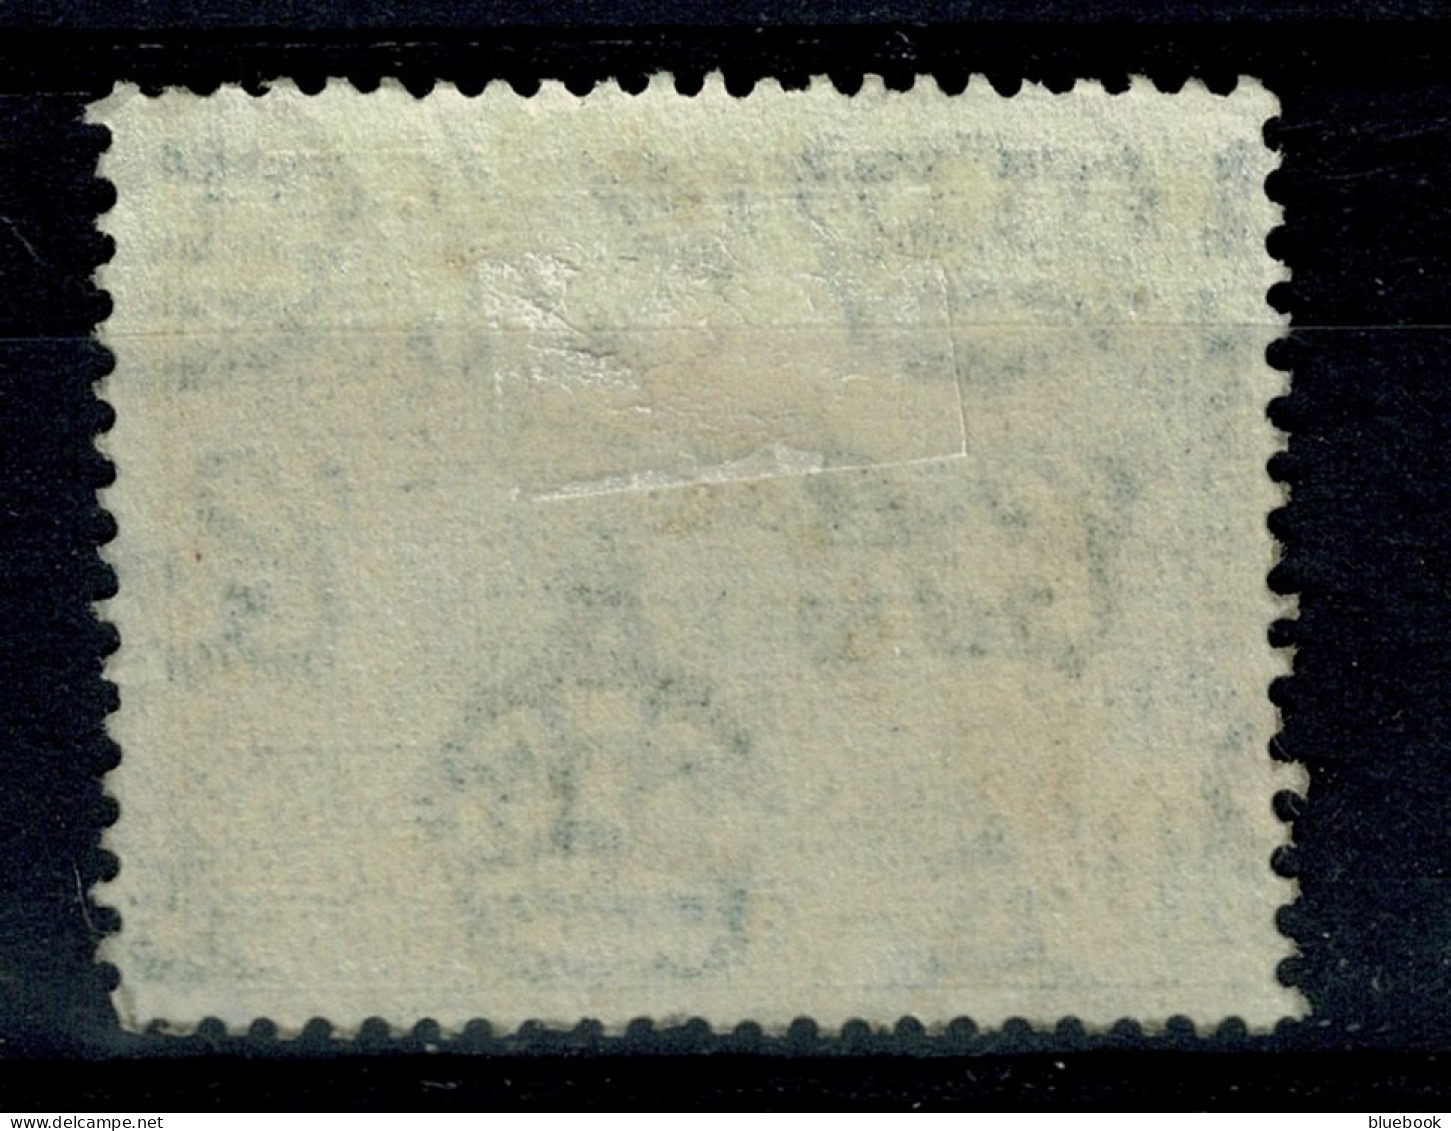 Ref 1640 - KUT Kenya Uganda & Tanganyka 1954 - 10/= Stamp - Royal Lodge - Fine Used SG 179 - Kenya, Uganda & Tanganyika